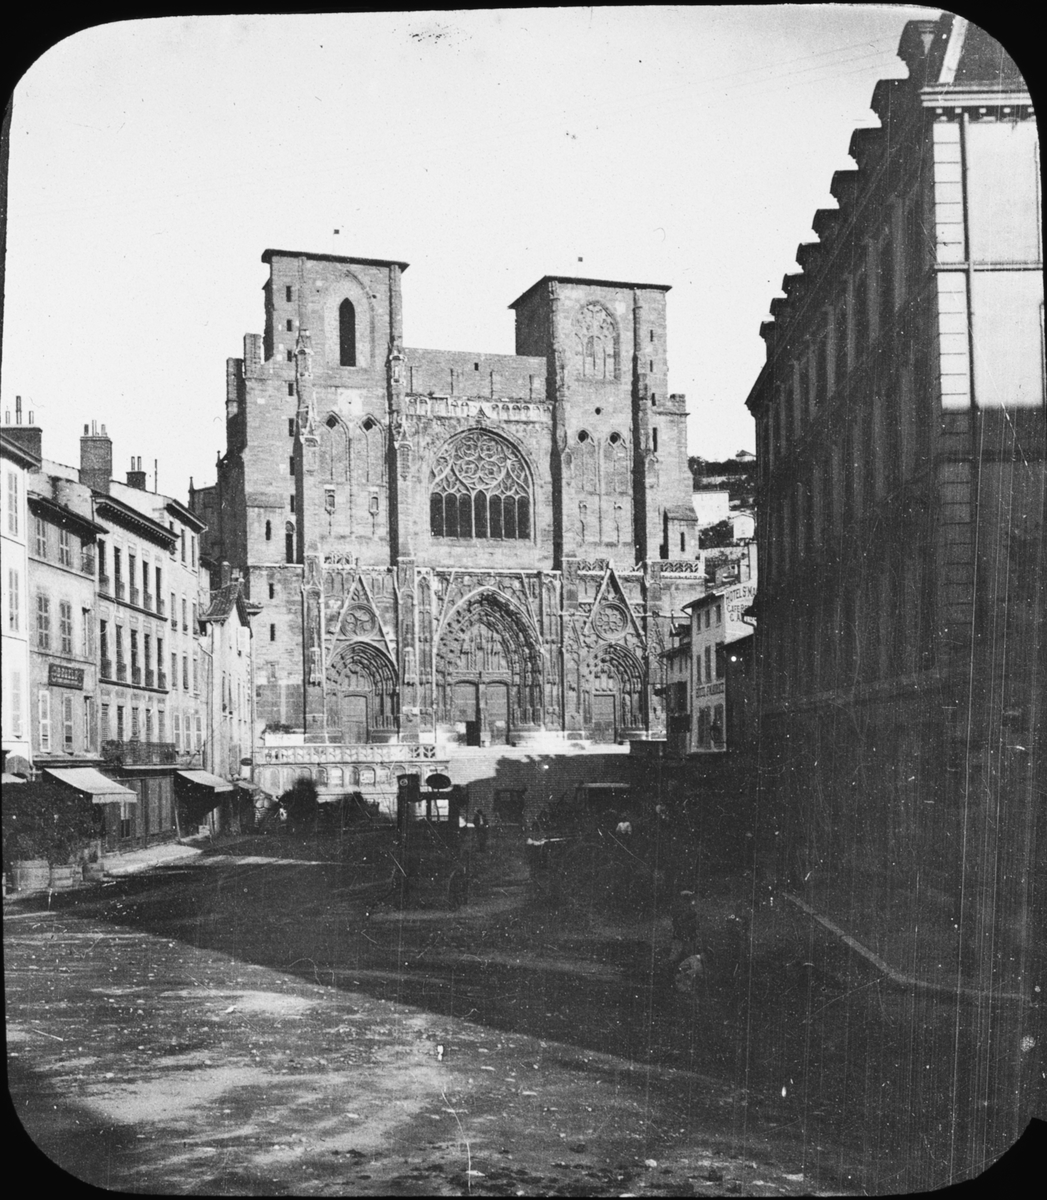 Skioptikonbild med motiv katedralen St. Maurice i Vienne, Frankrike.
Bilden har förvarats i kartong märkt: Höstresan 1907. Lyon 5. Vienne 2. No 1. Text på bild: "St. Maurice".